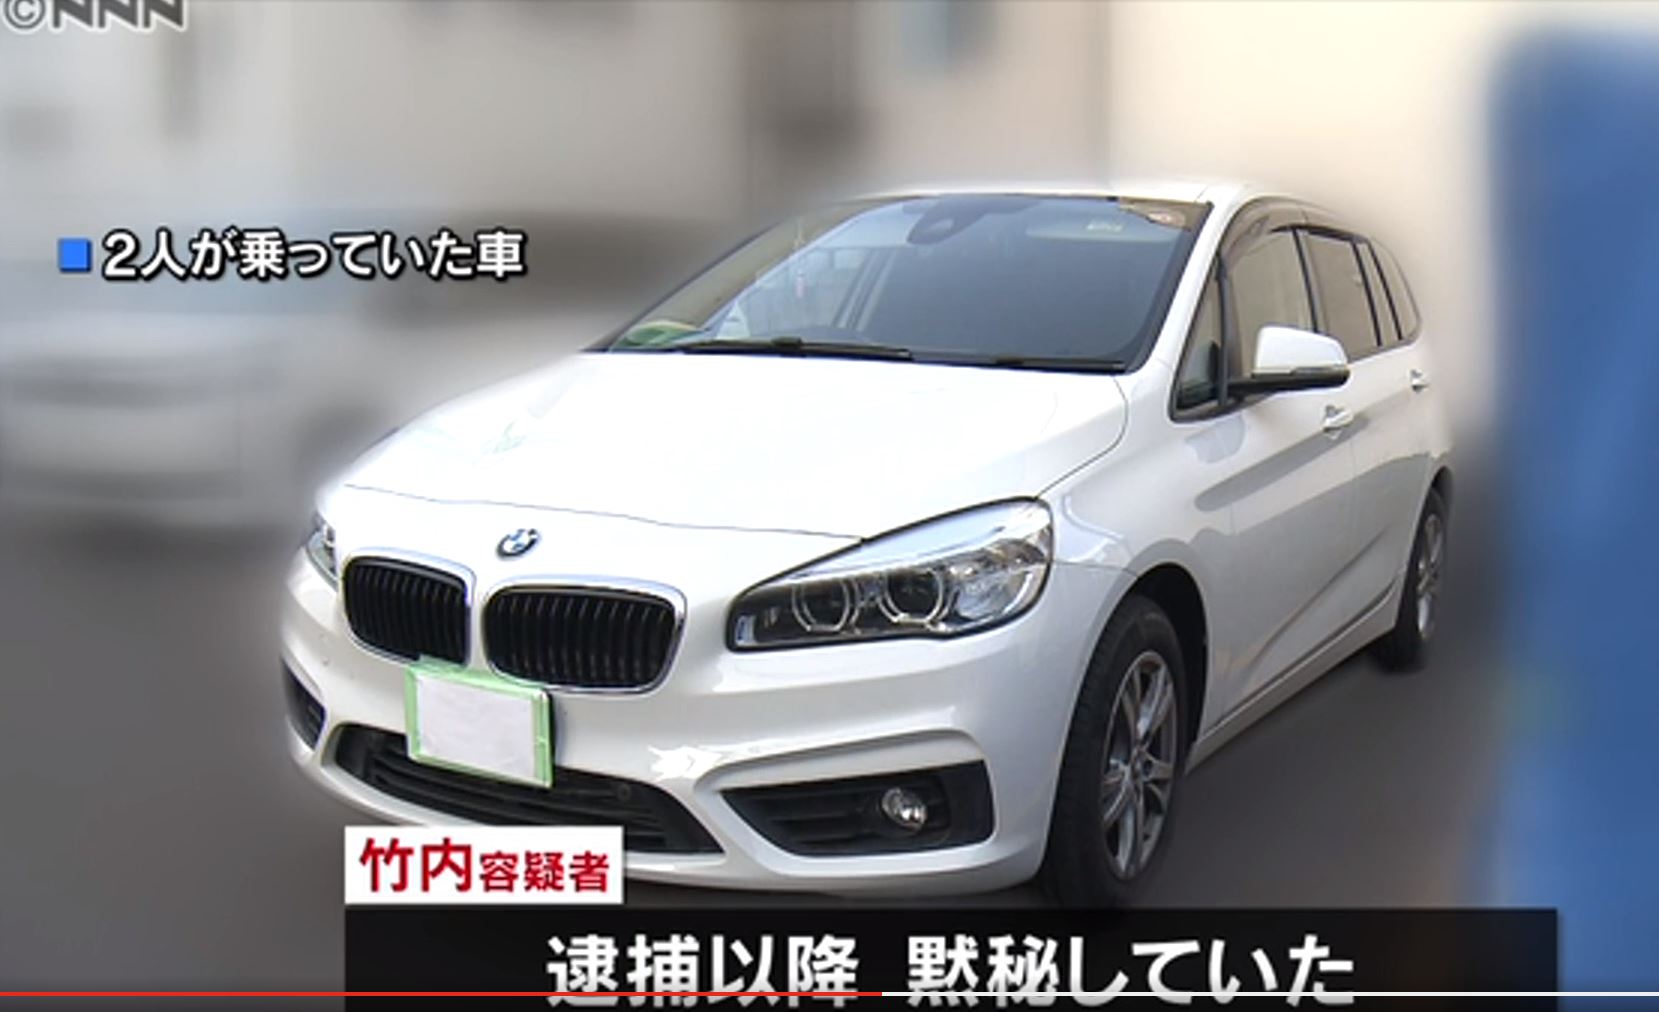 3세, 6세 딸들을 차 안에 방치해 숨지게 한 일본 가가와현 다카마쓰시 거주 A씨의 BMW 승용차. 니혼TV 화면 캡처